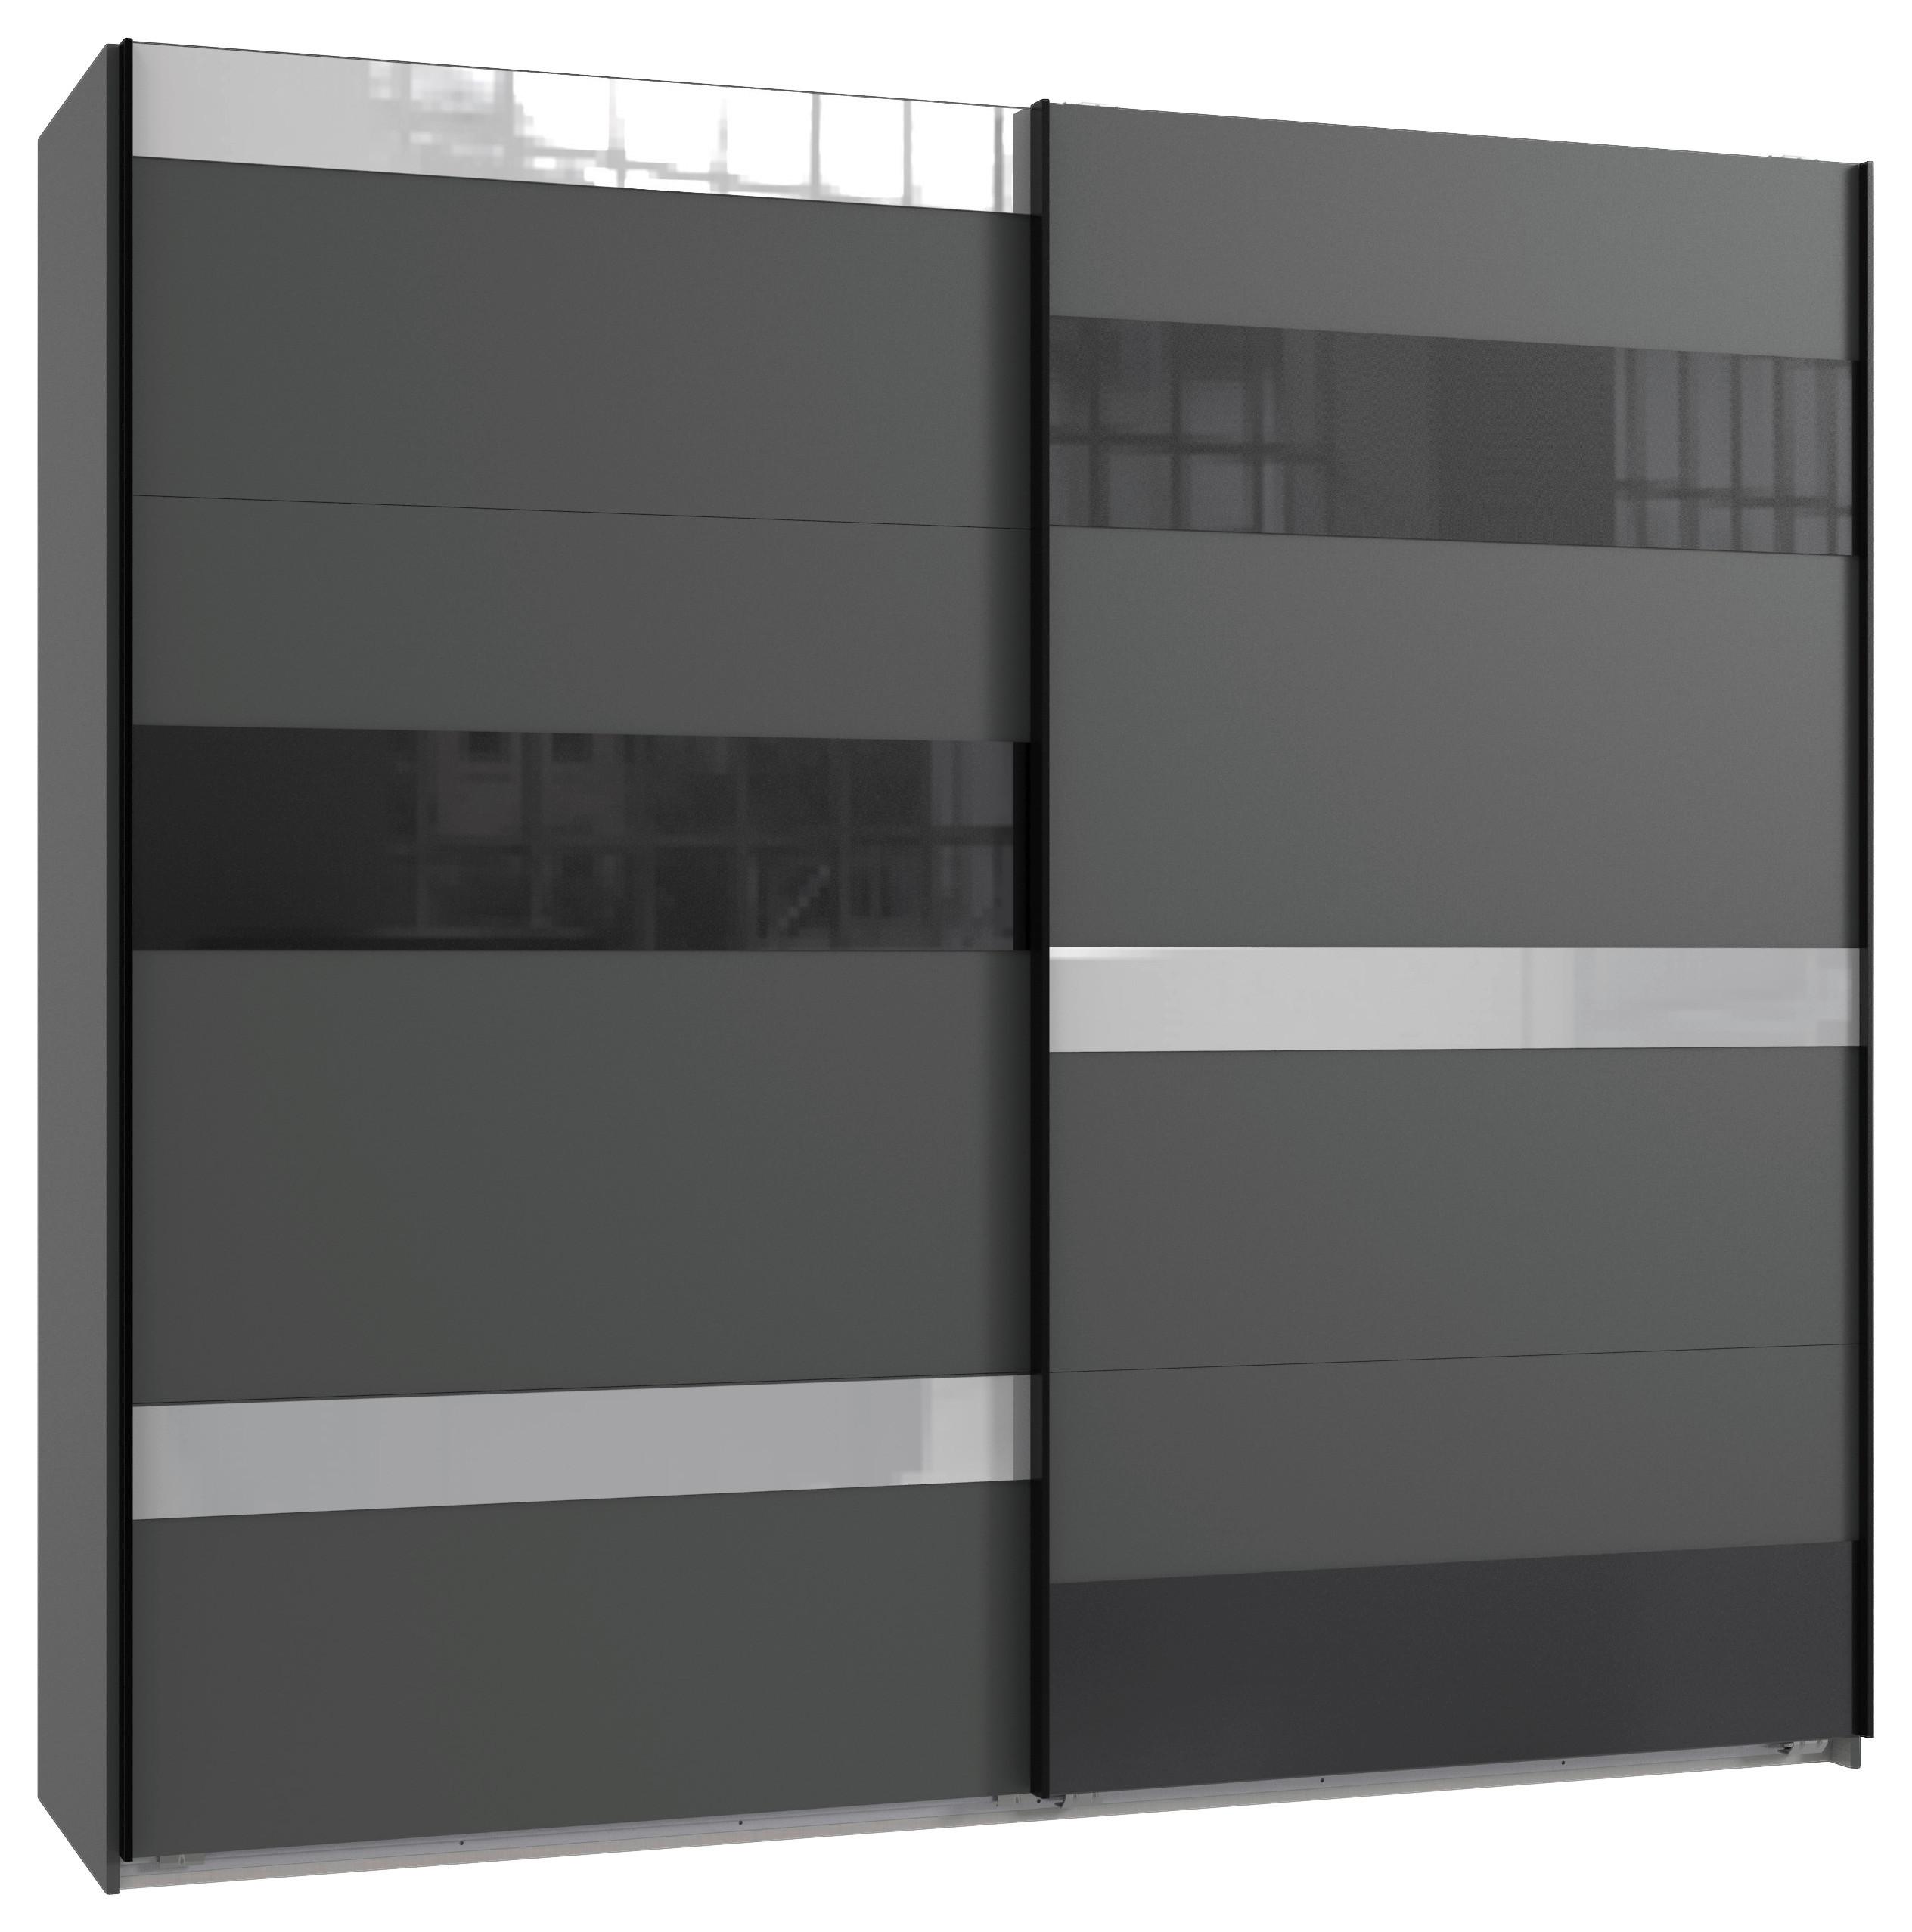 Omara Z Drsnimi Vrati Monaco - črna/siva, Konvencionalno, kovina/steklo (225/210/65cm) - Modern Living